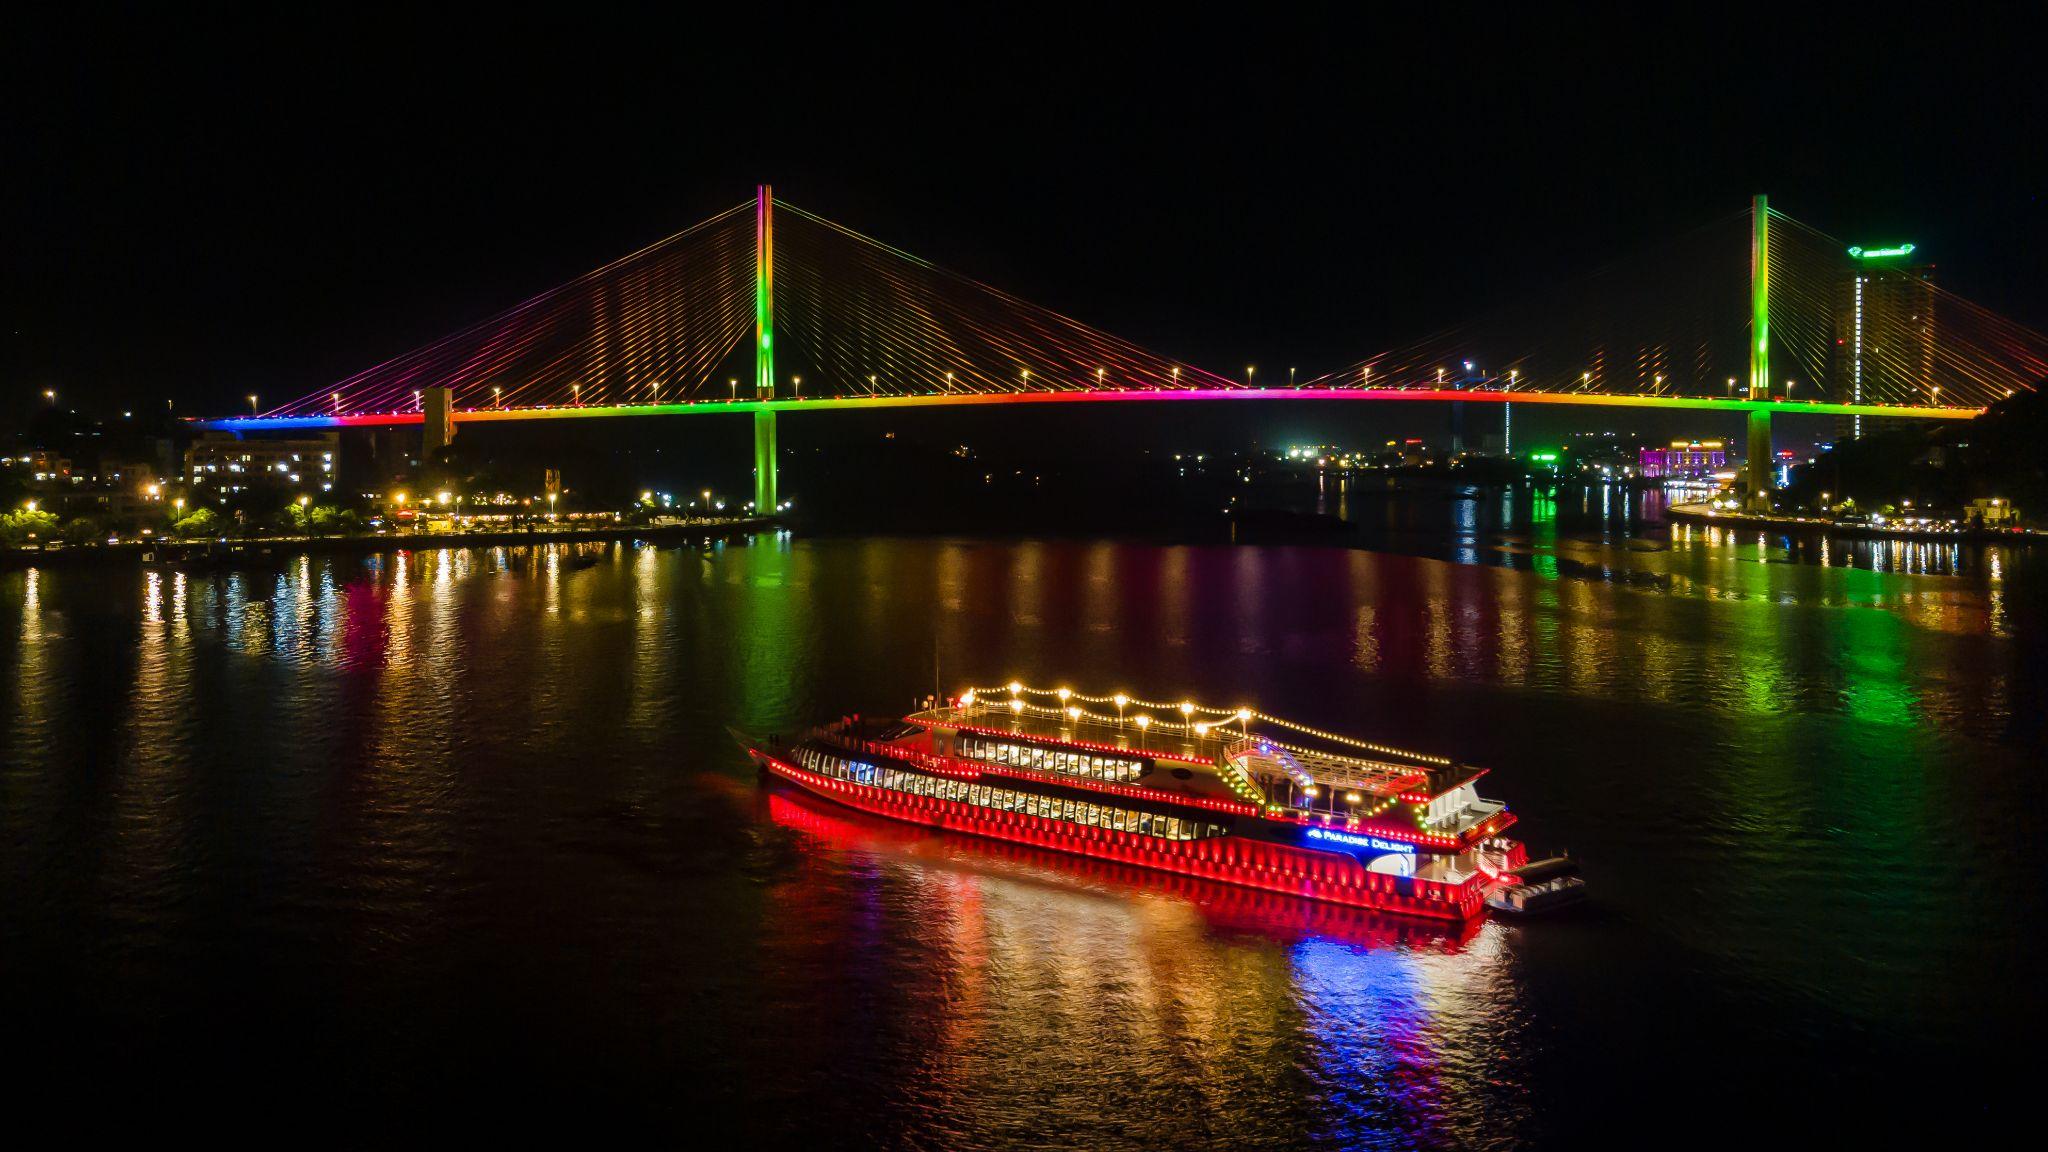 Du thuyền nhà hàng 5 sao chuẩn quốc tế Paradise Delight mang đến trải nghiệm show diễn nghệ thuật đầu tiên tại Việt Nam